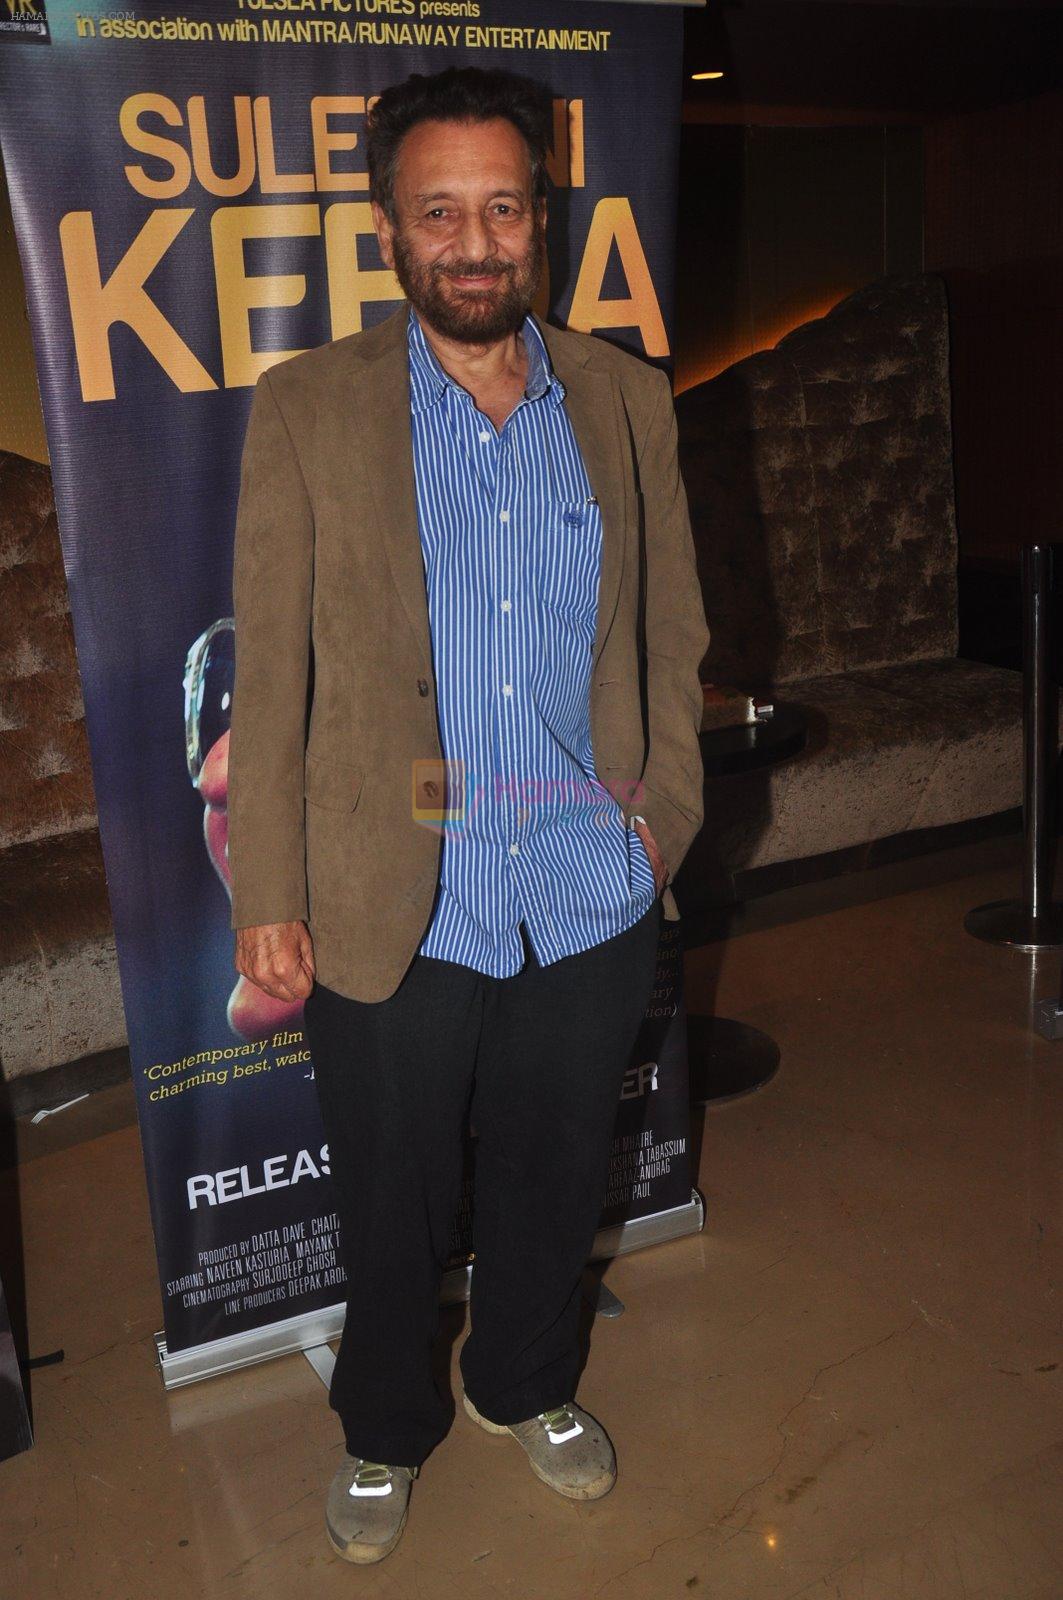 Shekhar Kapur at Suleman Keeda premiere in PVR, Mumbai on 10th Dec 2014